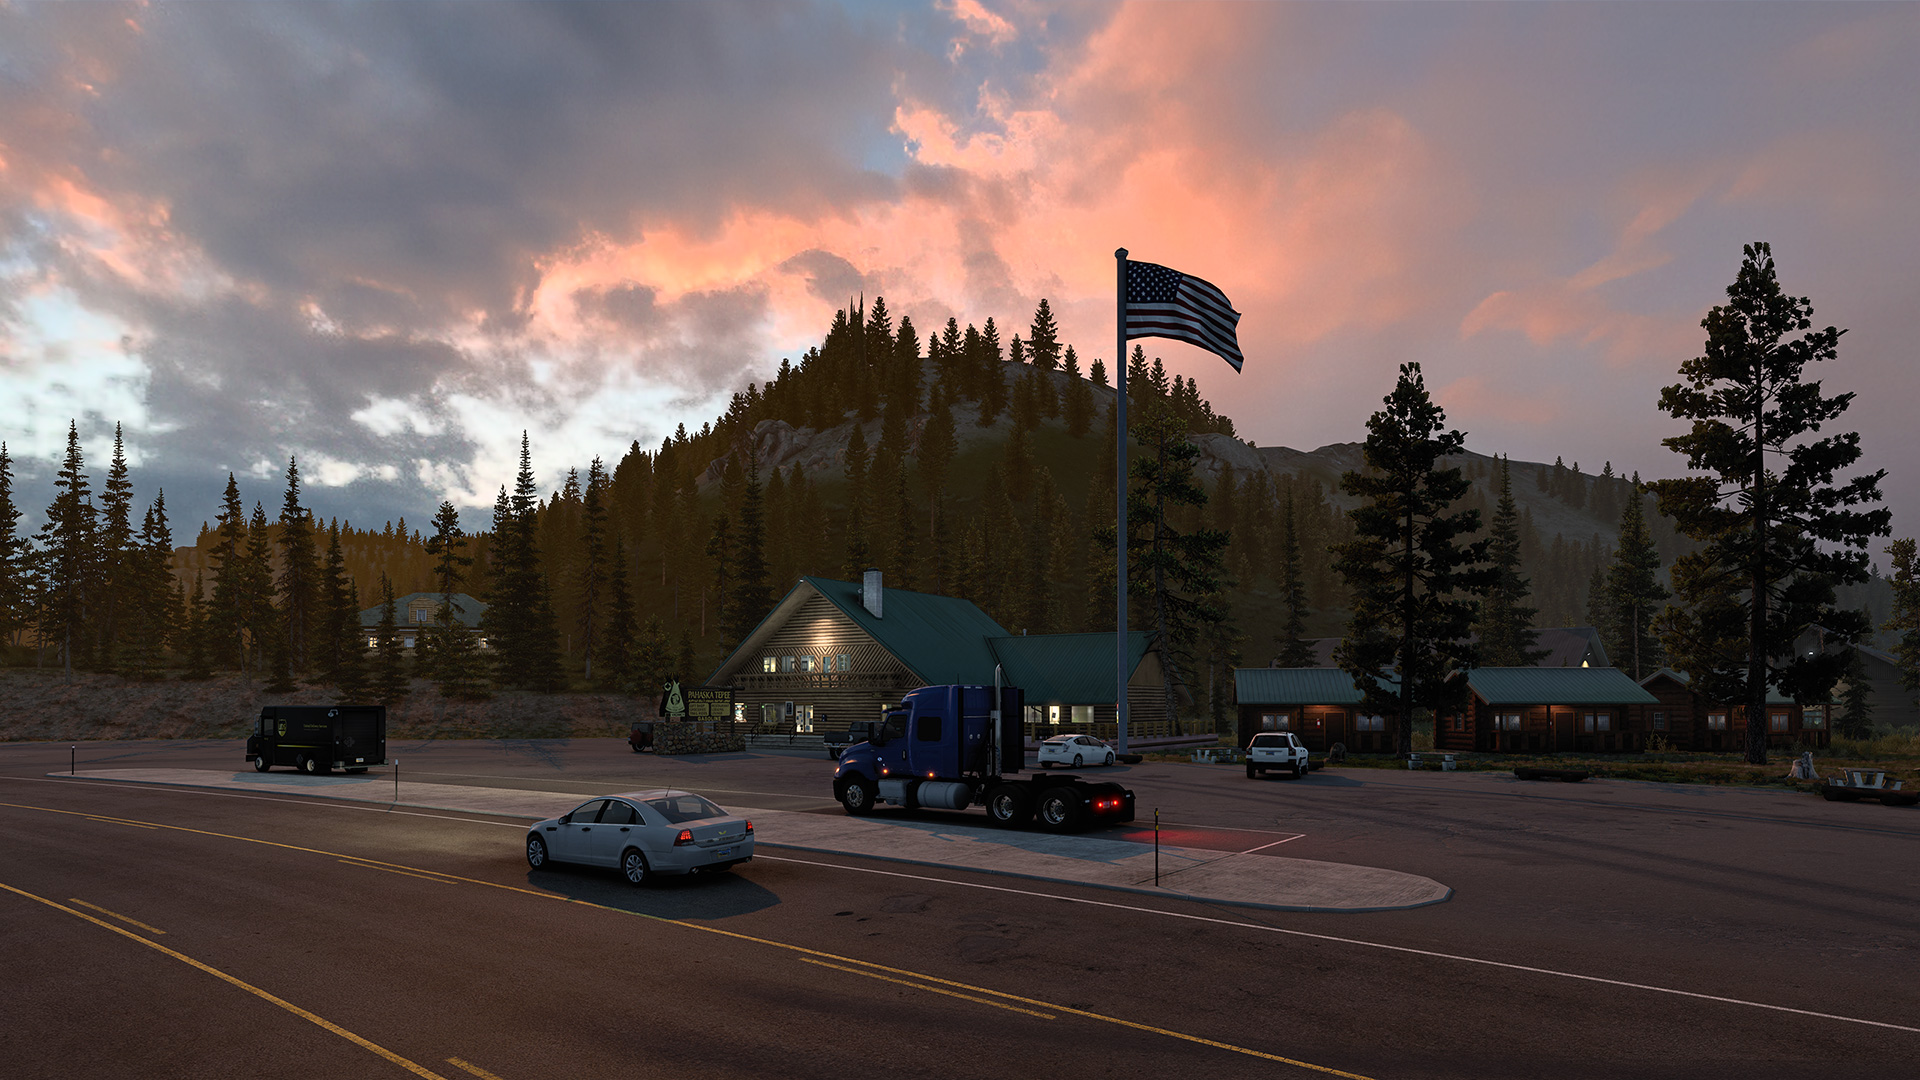 More information about "Euro / American Truck Simulator: rilasciato l'aggiornamento 1.45, Montana in arrivo"